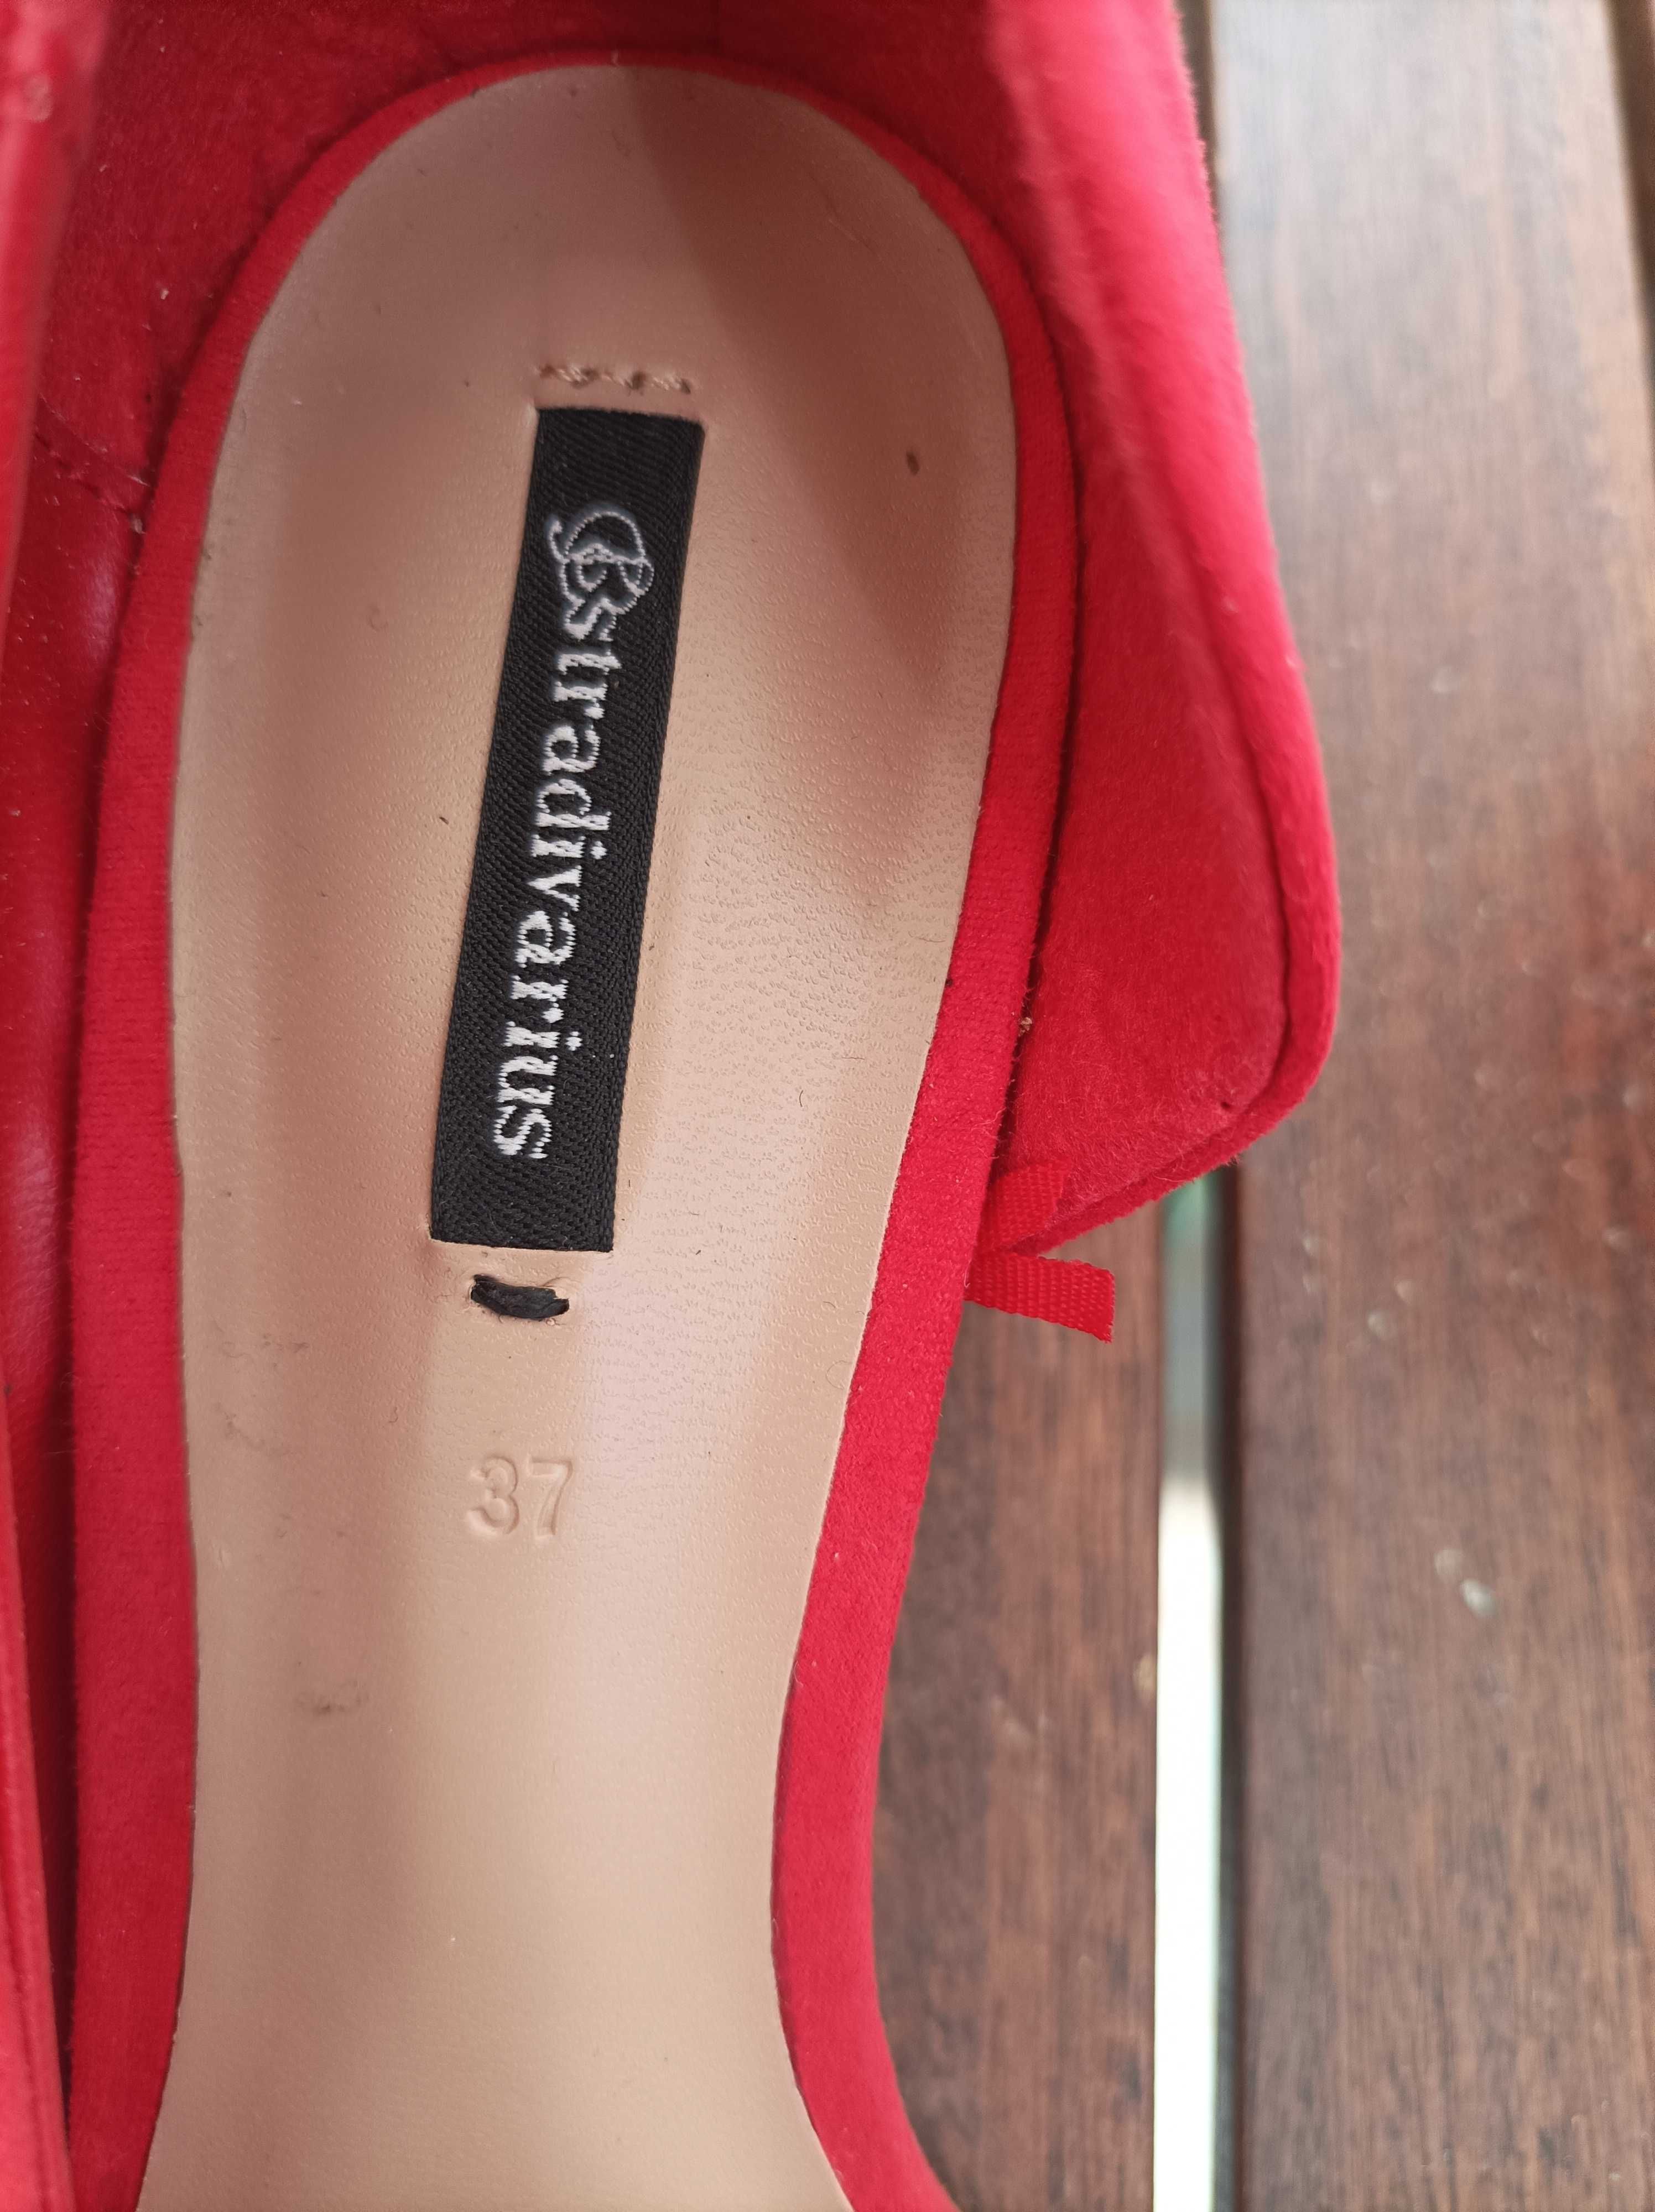 Sapatos camurça vermelhos novos.